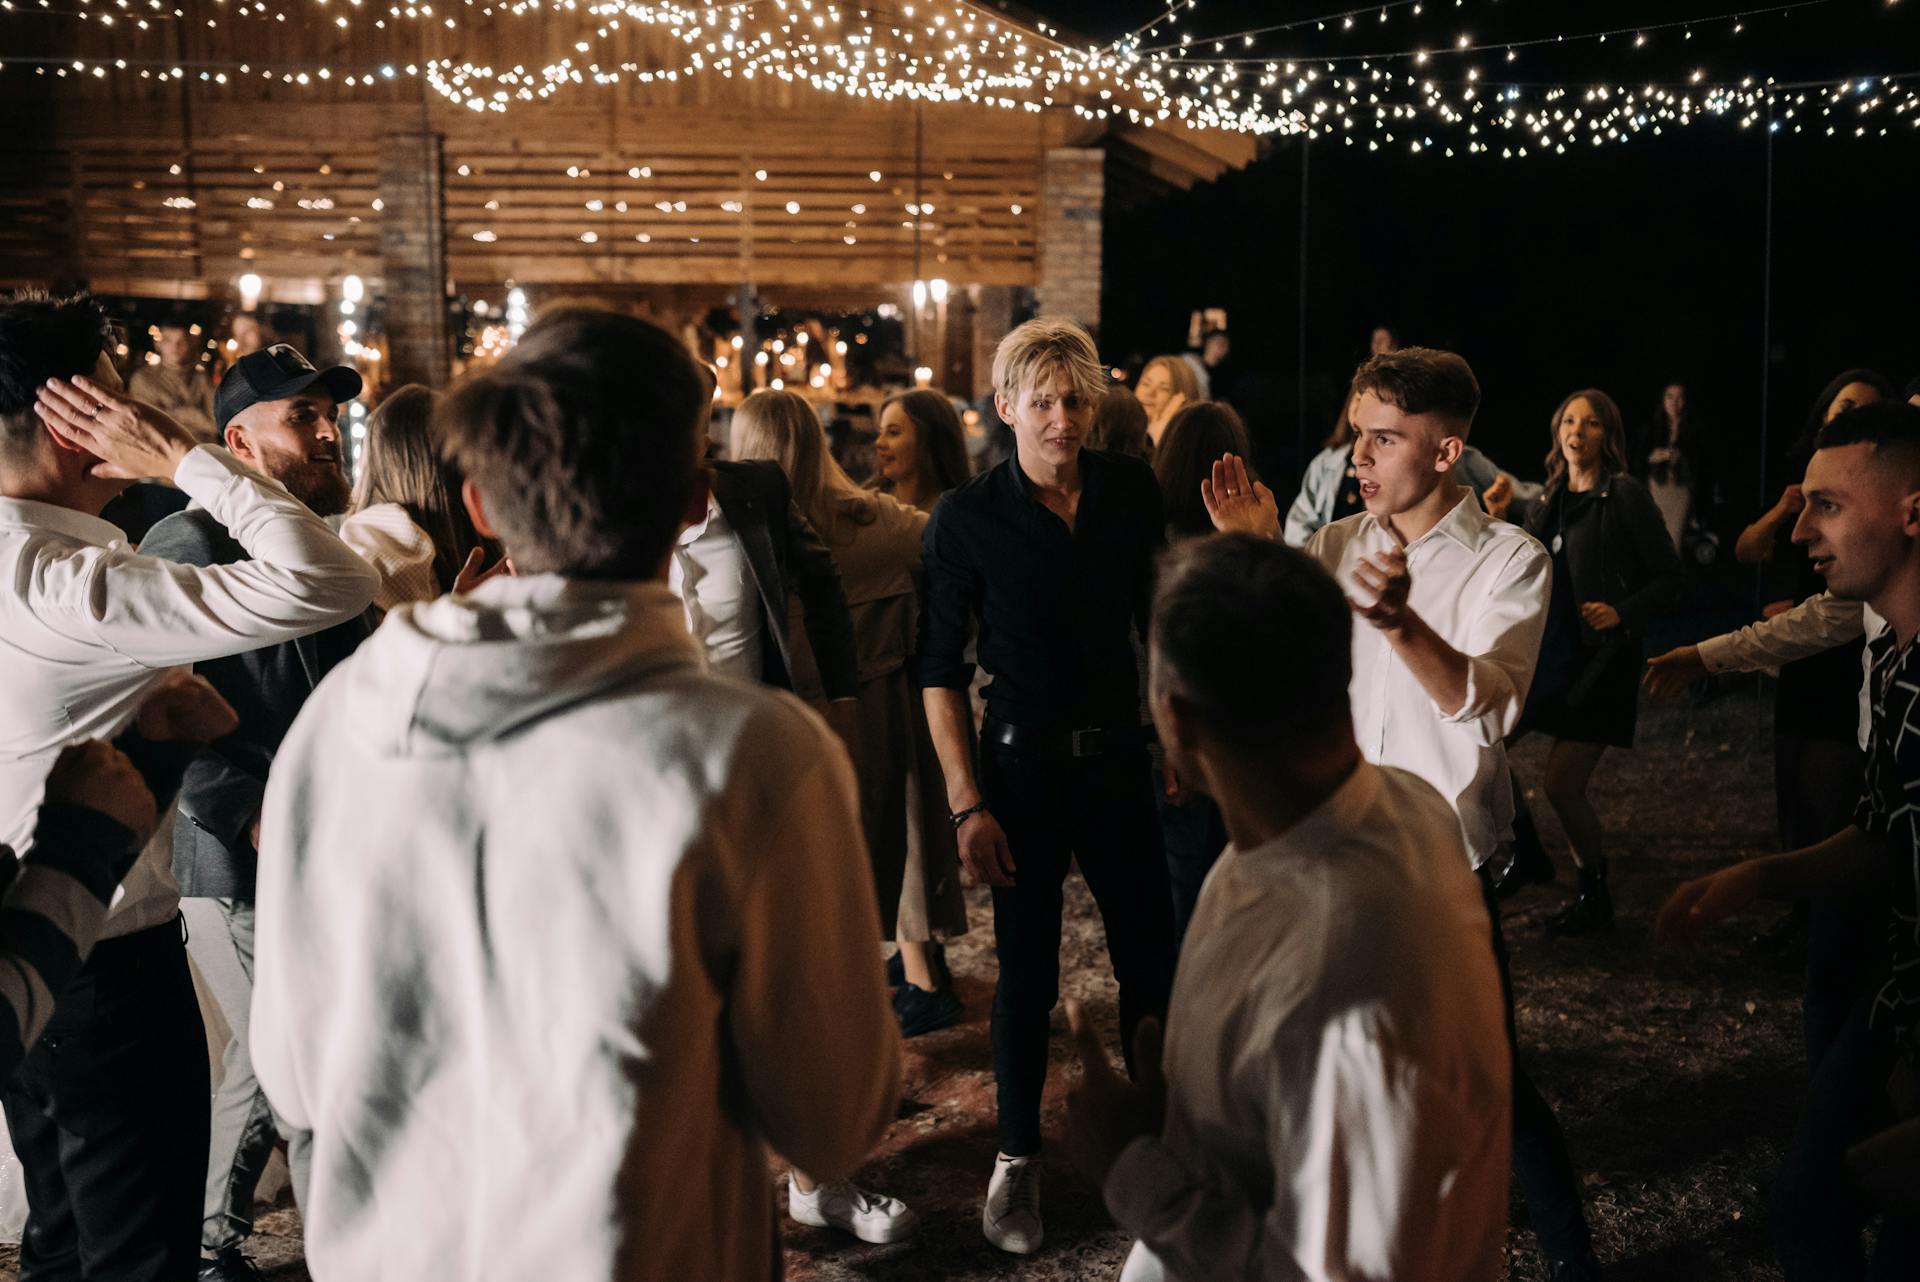 Guests dancing at a wedding | Source: Pexels